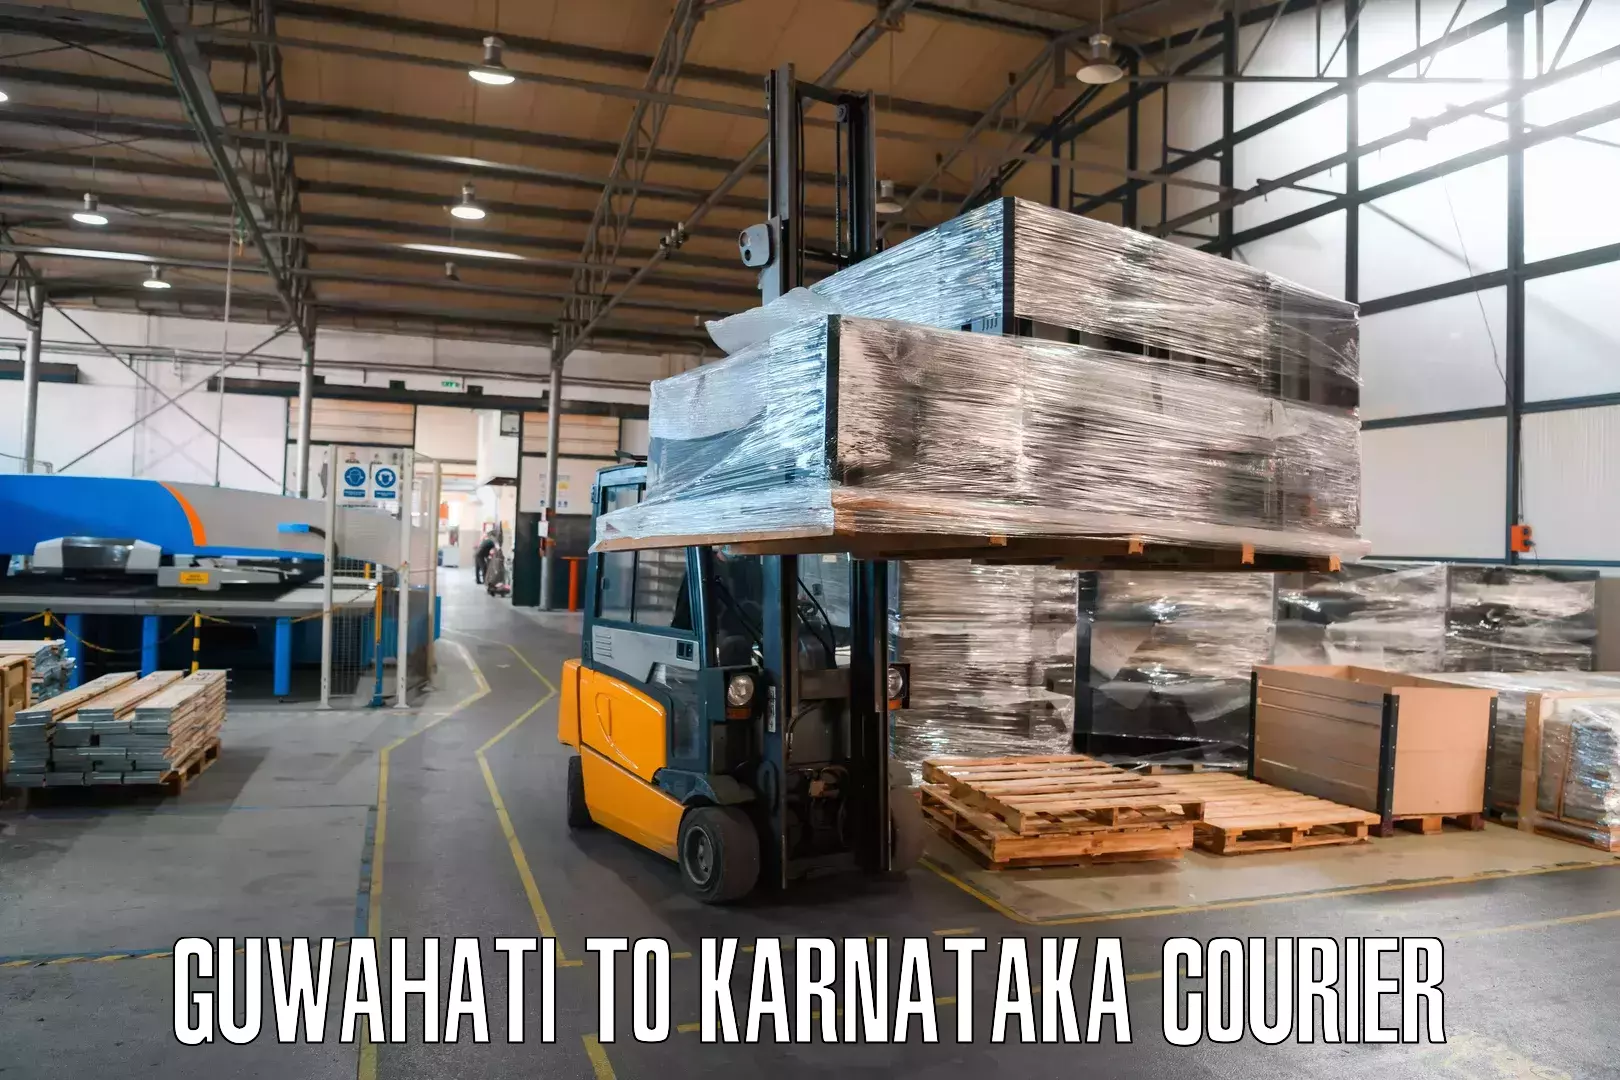 Flexible parcel services Guwahati to Kanjarakatte